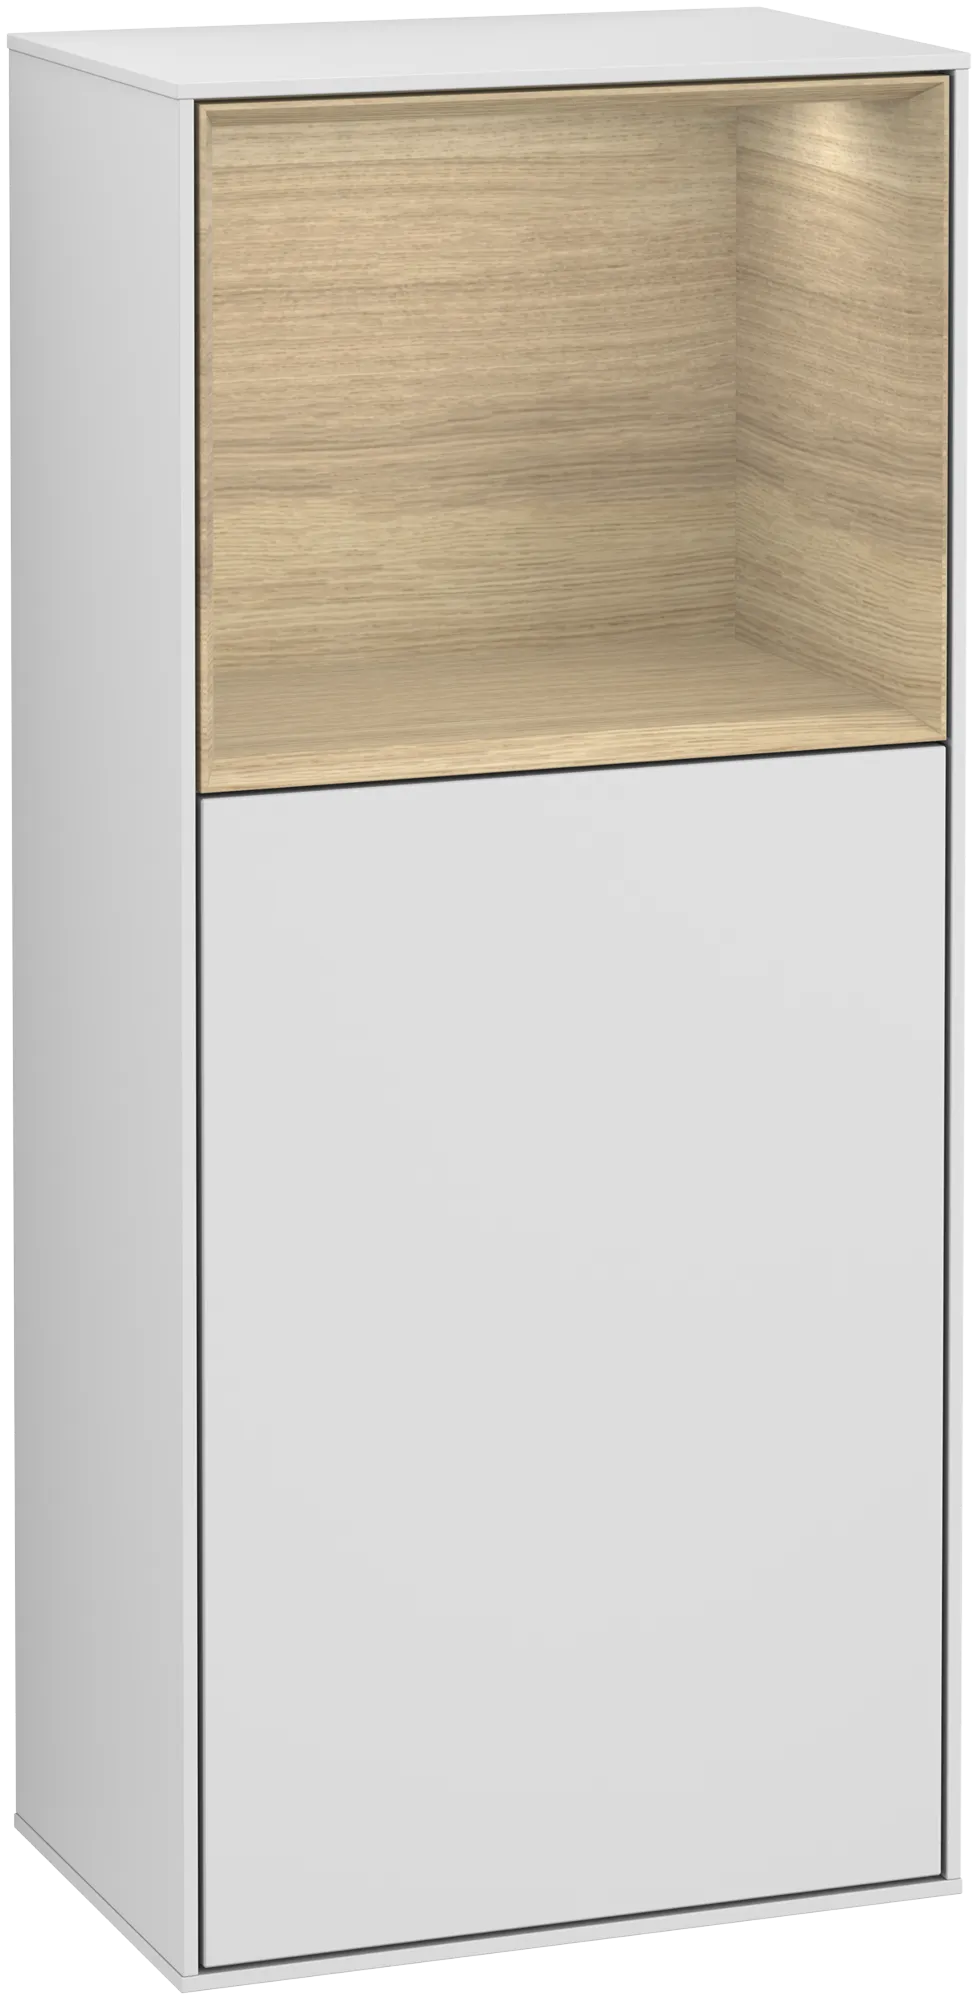 Bild von VILLEROY BOCH Finion Seitenschrank, mit Beleuchtung, 1 Tür, 418 x 936 x 270 mm, White Matt Lacquer / Oak Veneer #G510PCMT